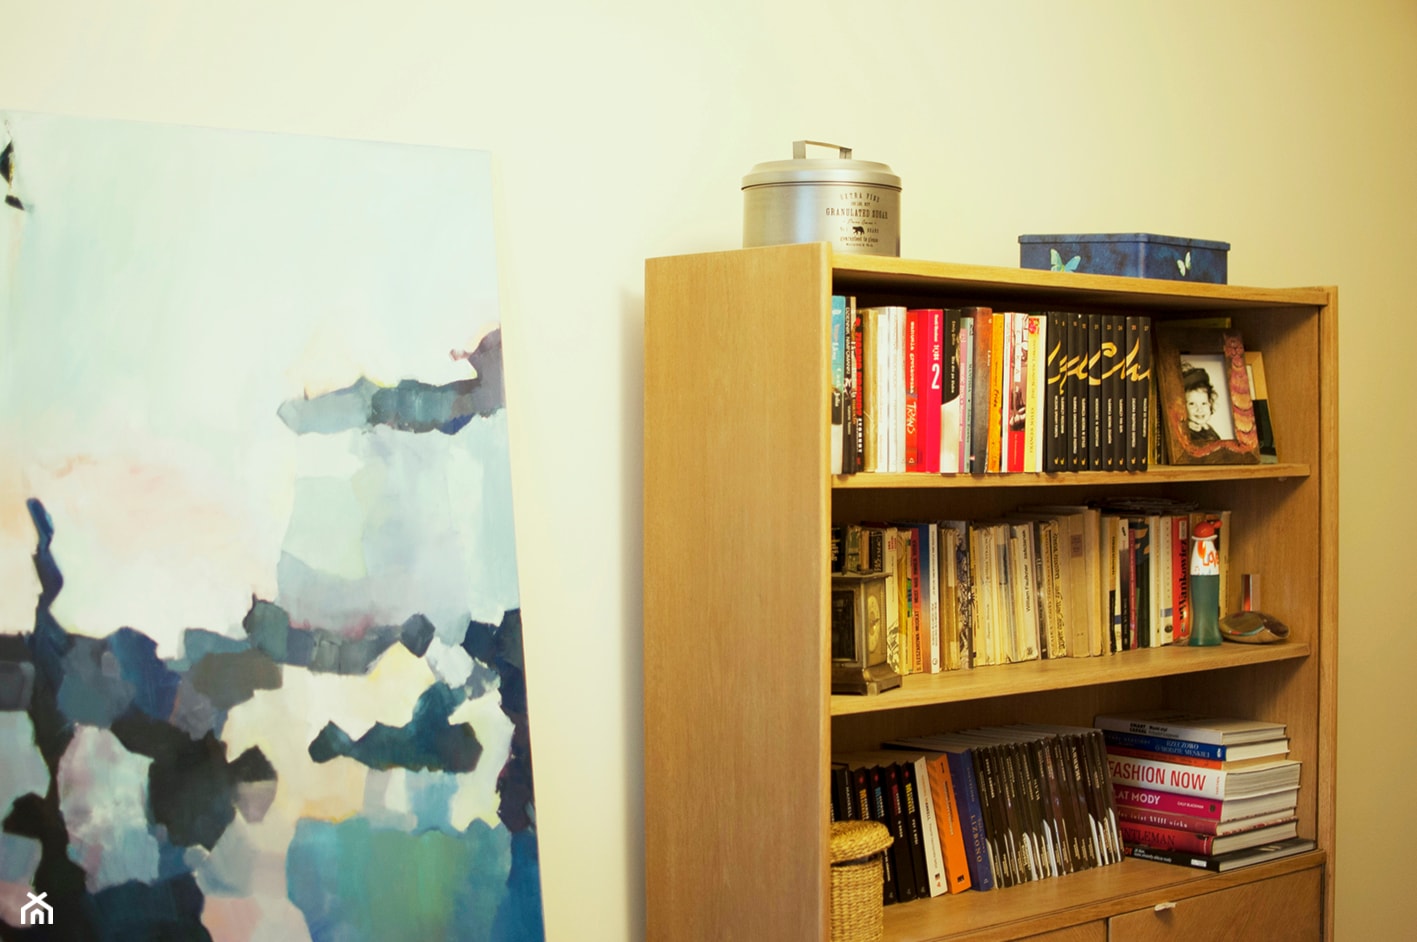 Mieszkanie 2pokojowe moich rodziców - Sypialnia, styl nowoczesny - zdjęcie od Katarzyna Łagowska - Homebook